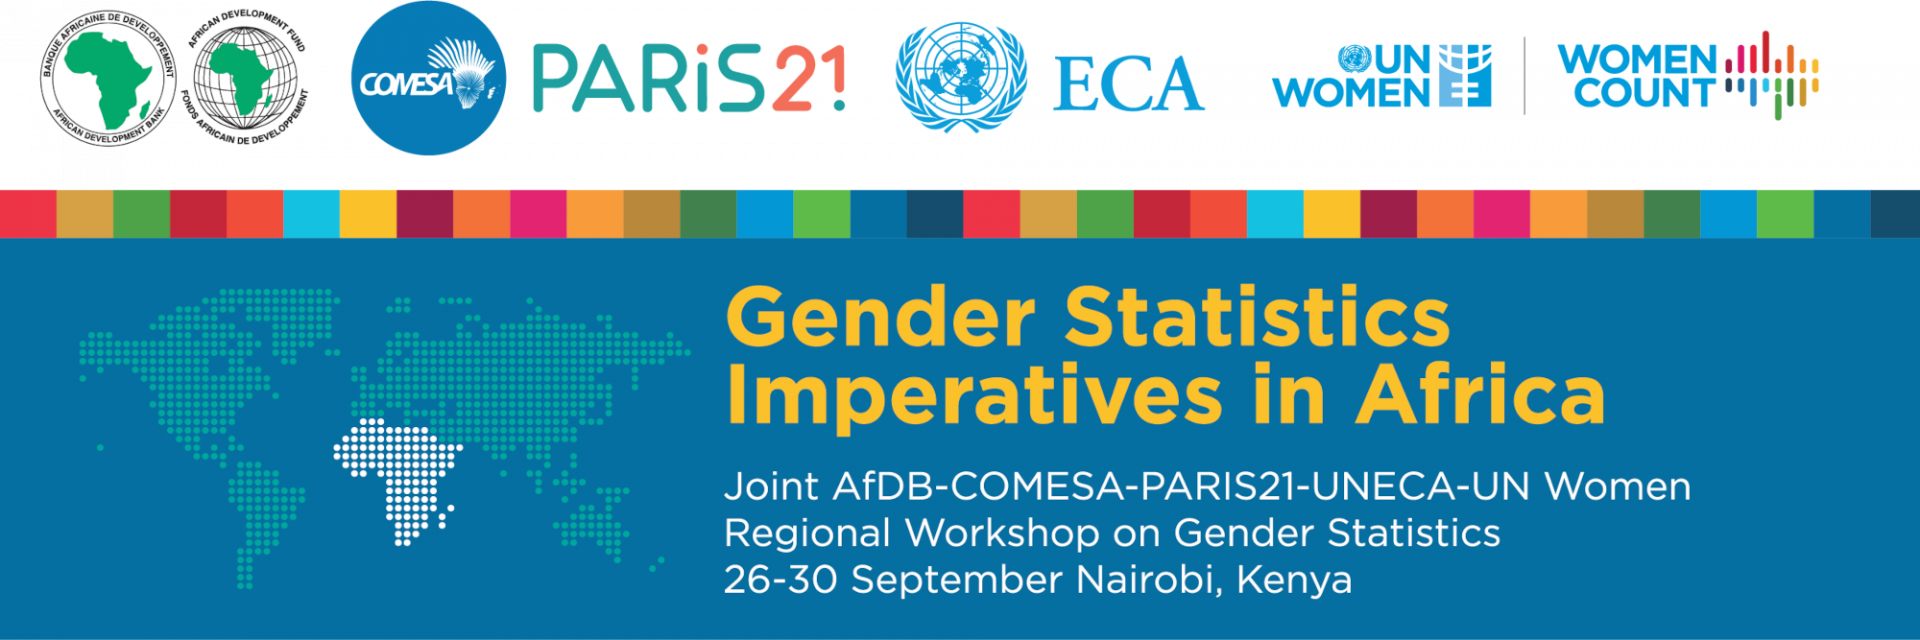 Gender Statistics Imperatives for Africa